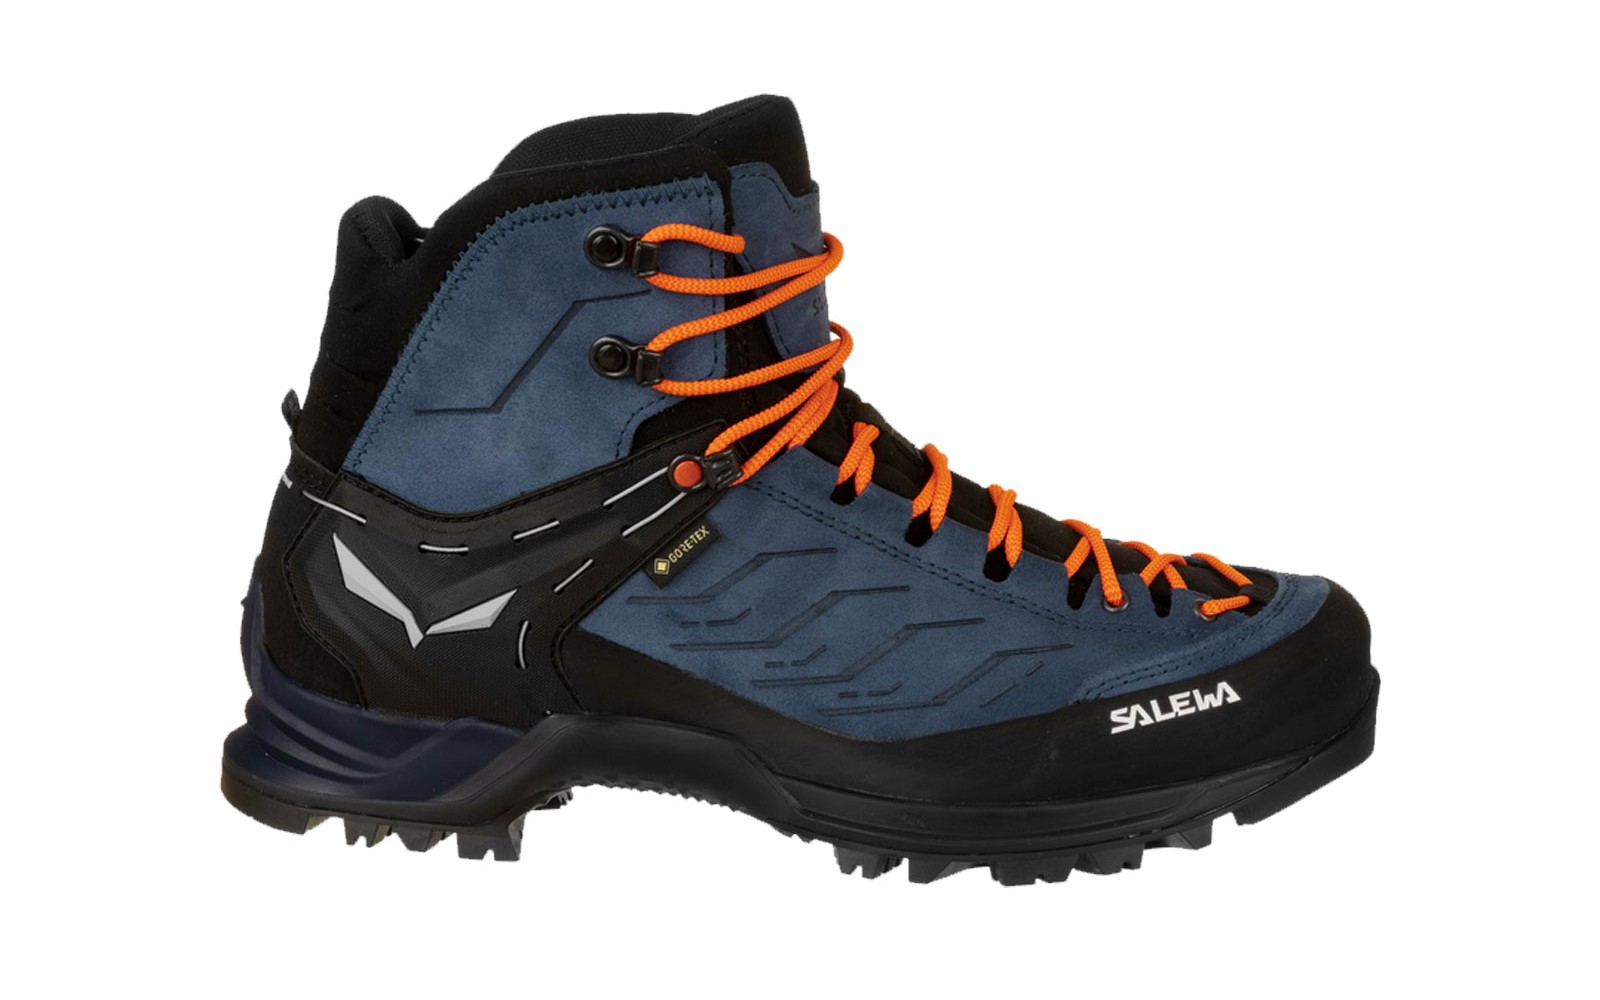 Salewa Mountain Trainer Lite Mid GTX - Botas de trekking Mujer, Envío  gratuito